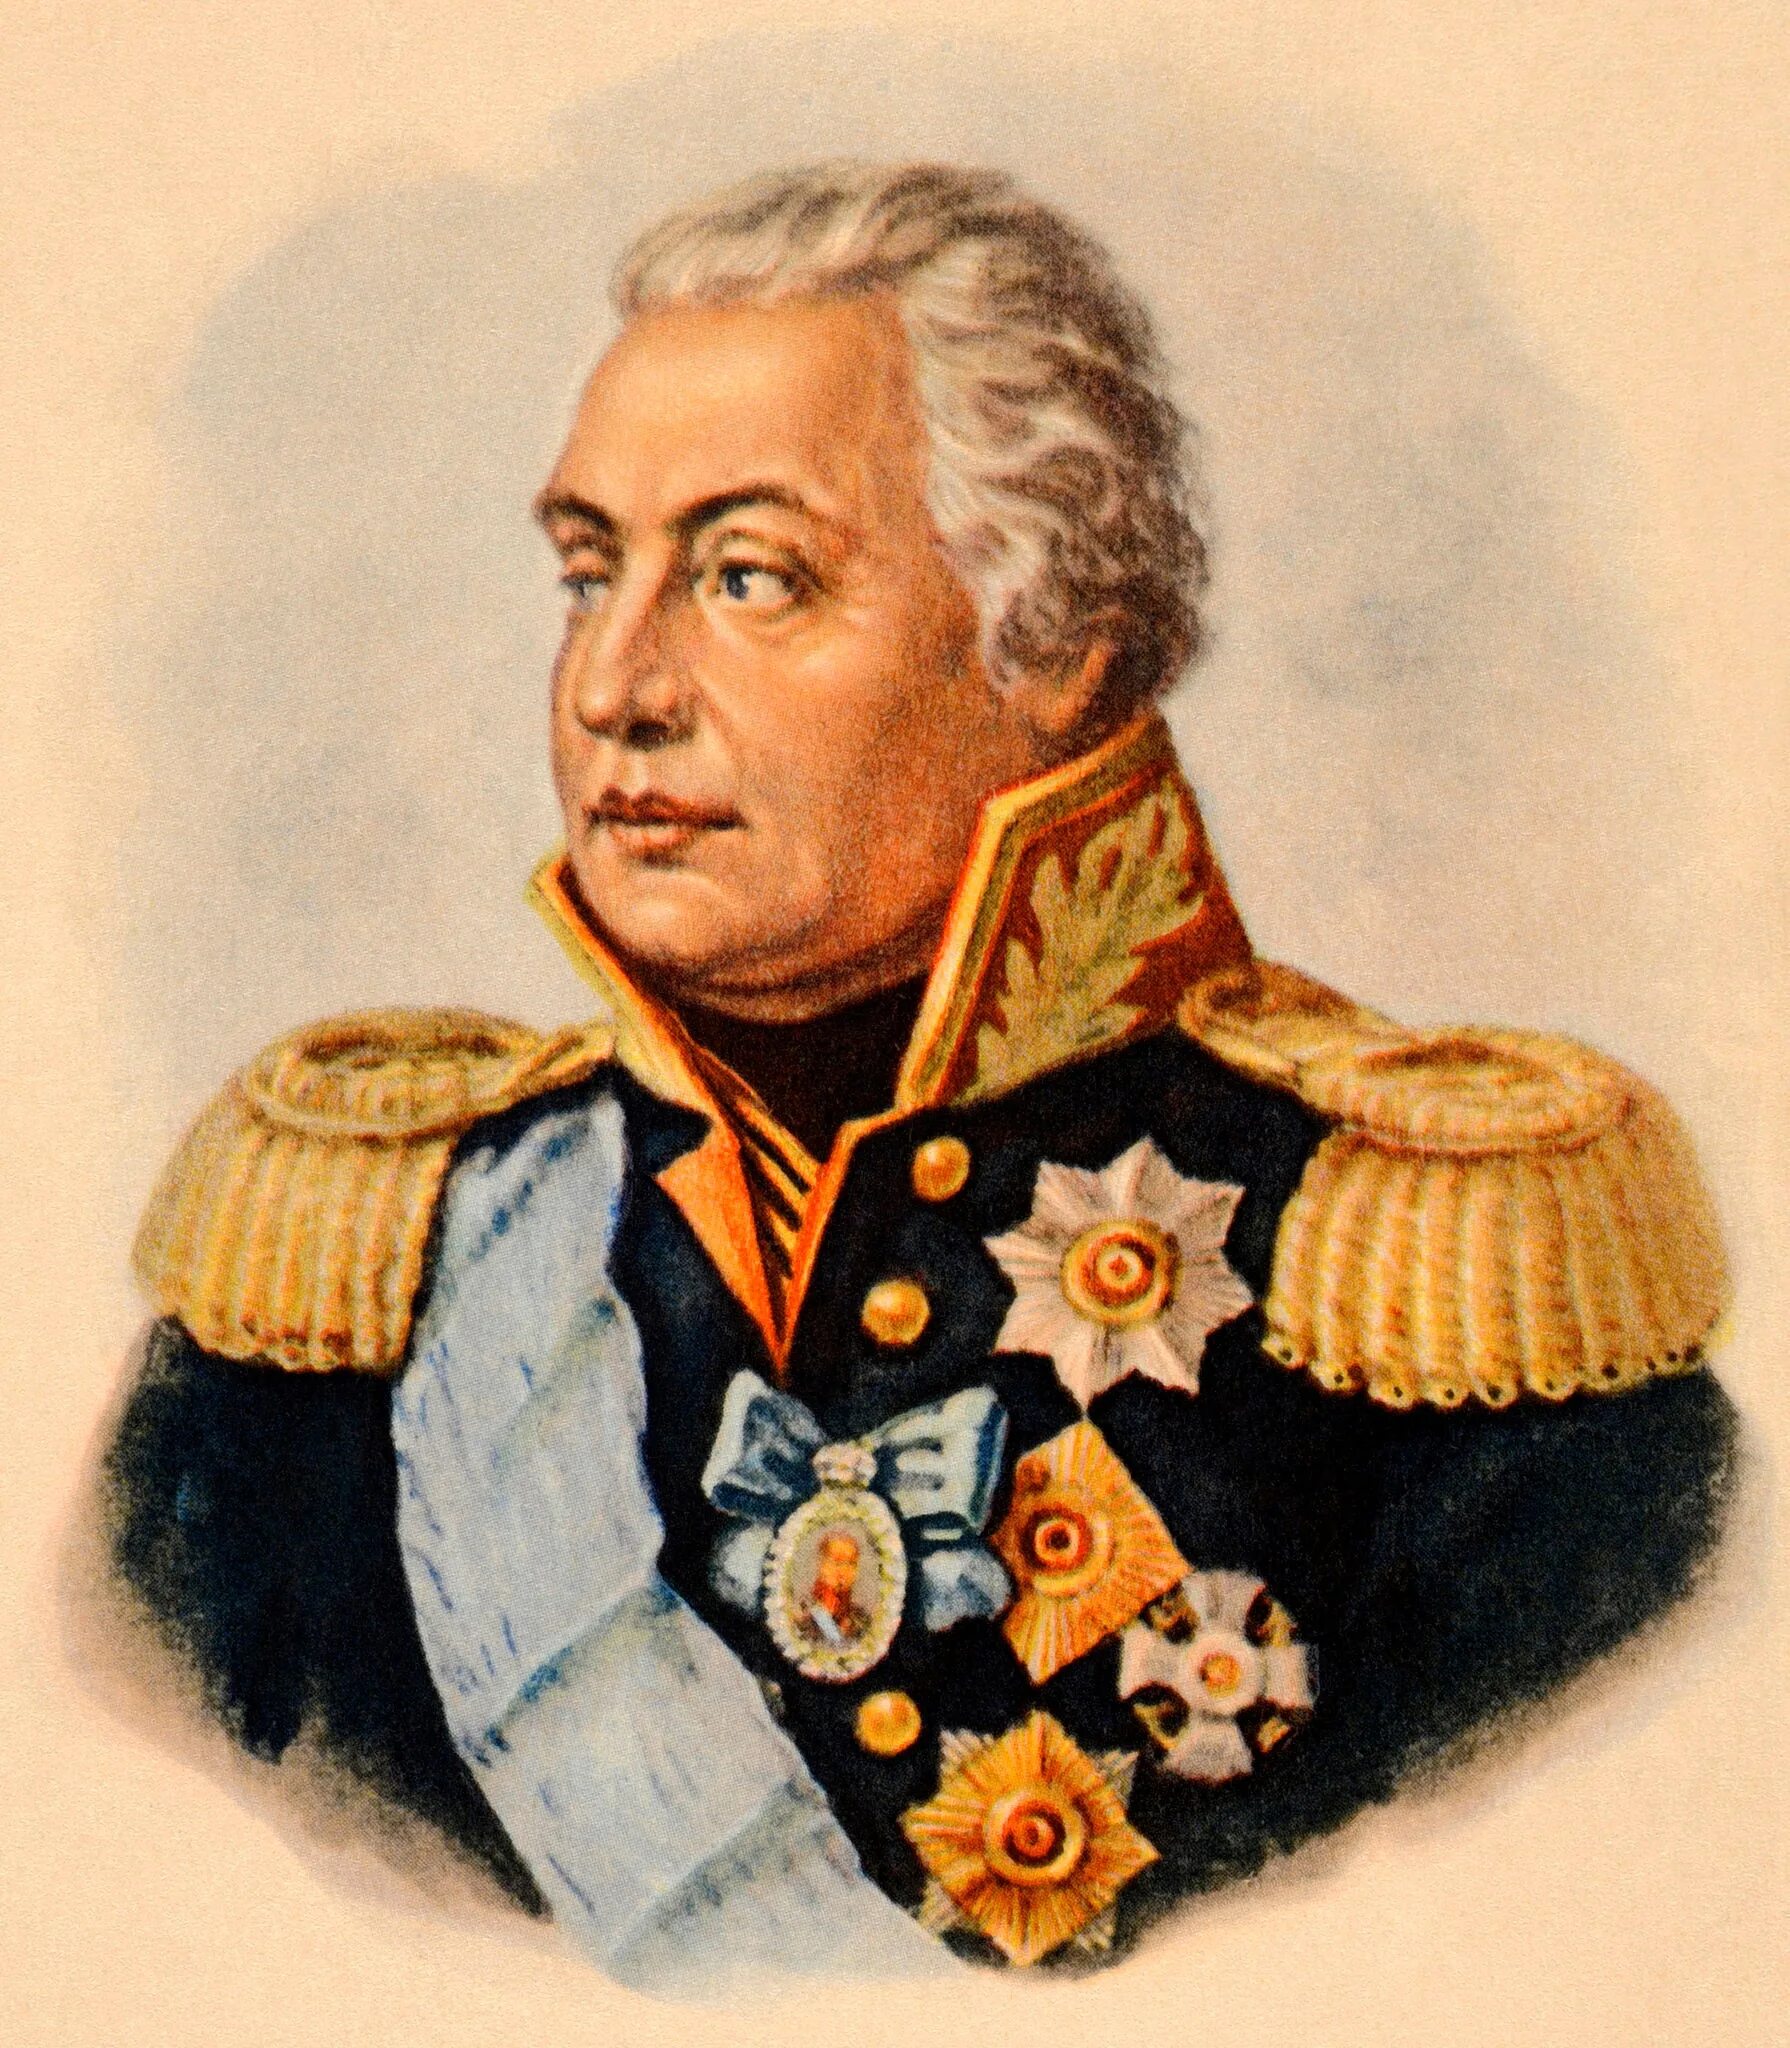 Назовите российского военачальника изображенного. М. И. Кутузов (1745-1813).